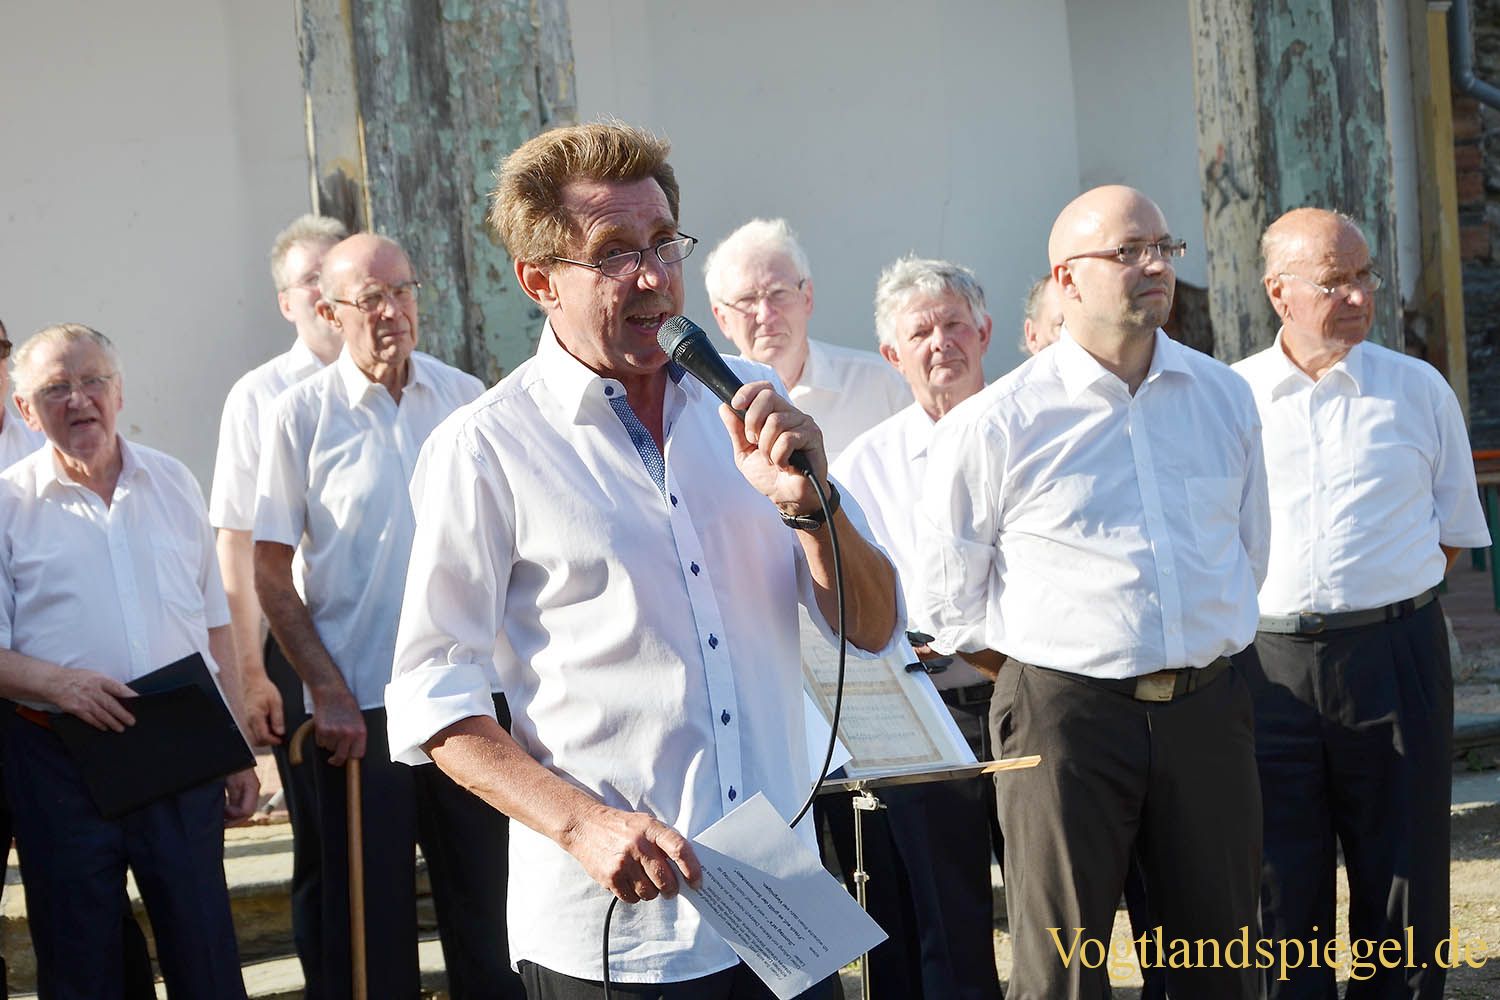 Sommer.KultuRtage: Männerchorgemeinschaft Greiz erfreute mit schönen Melodien